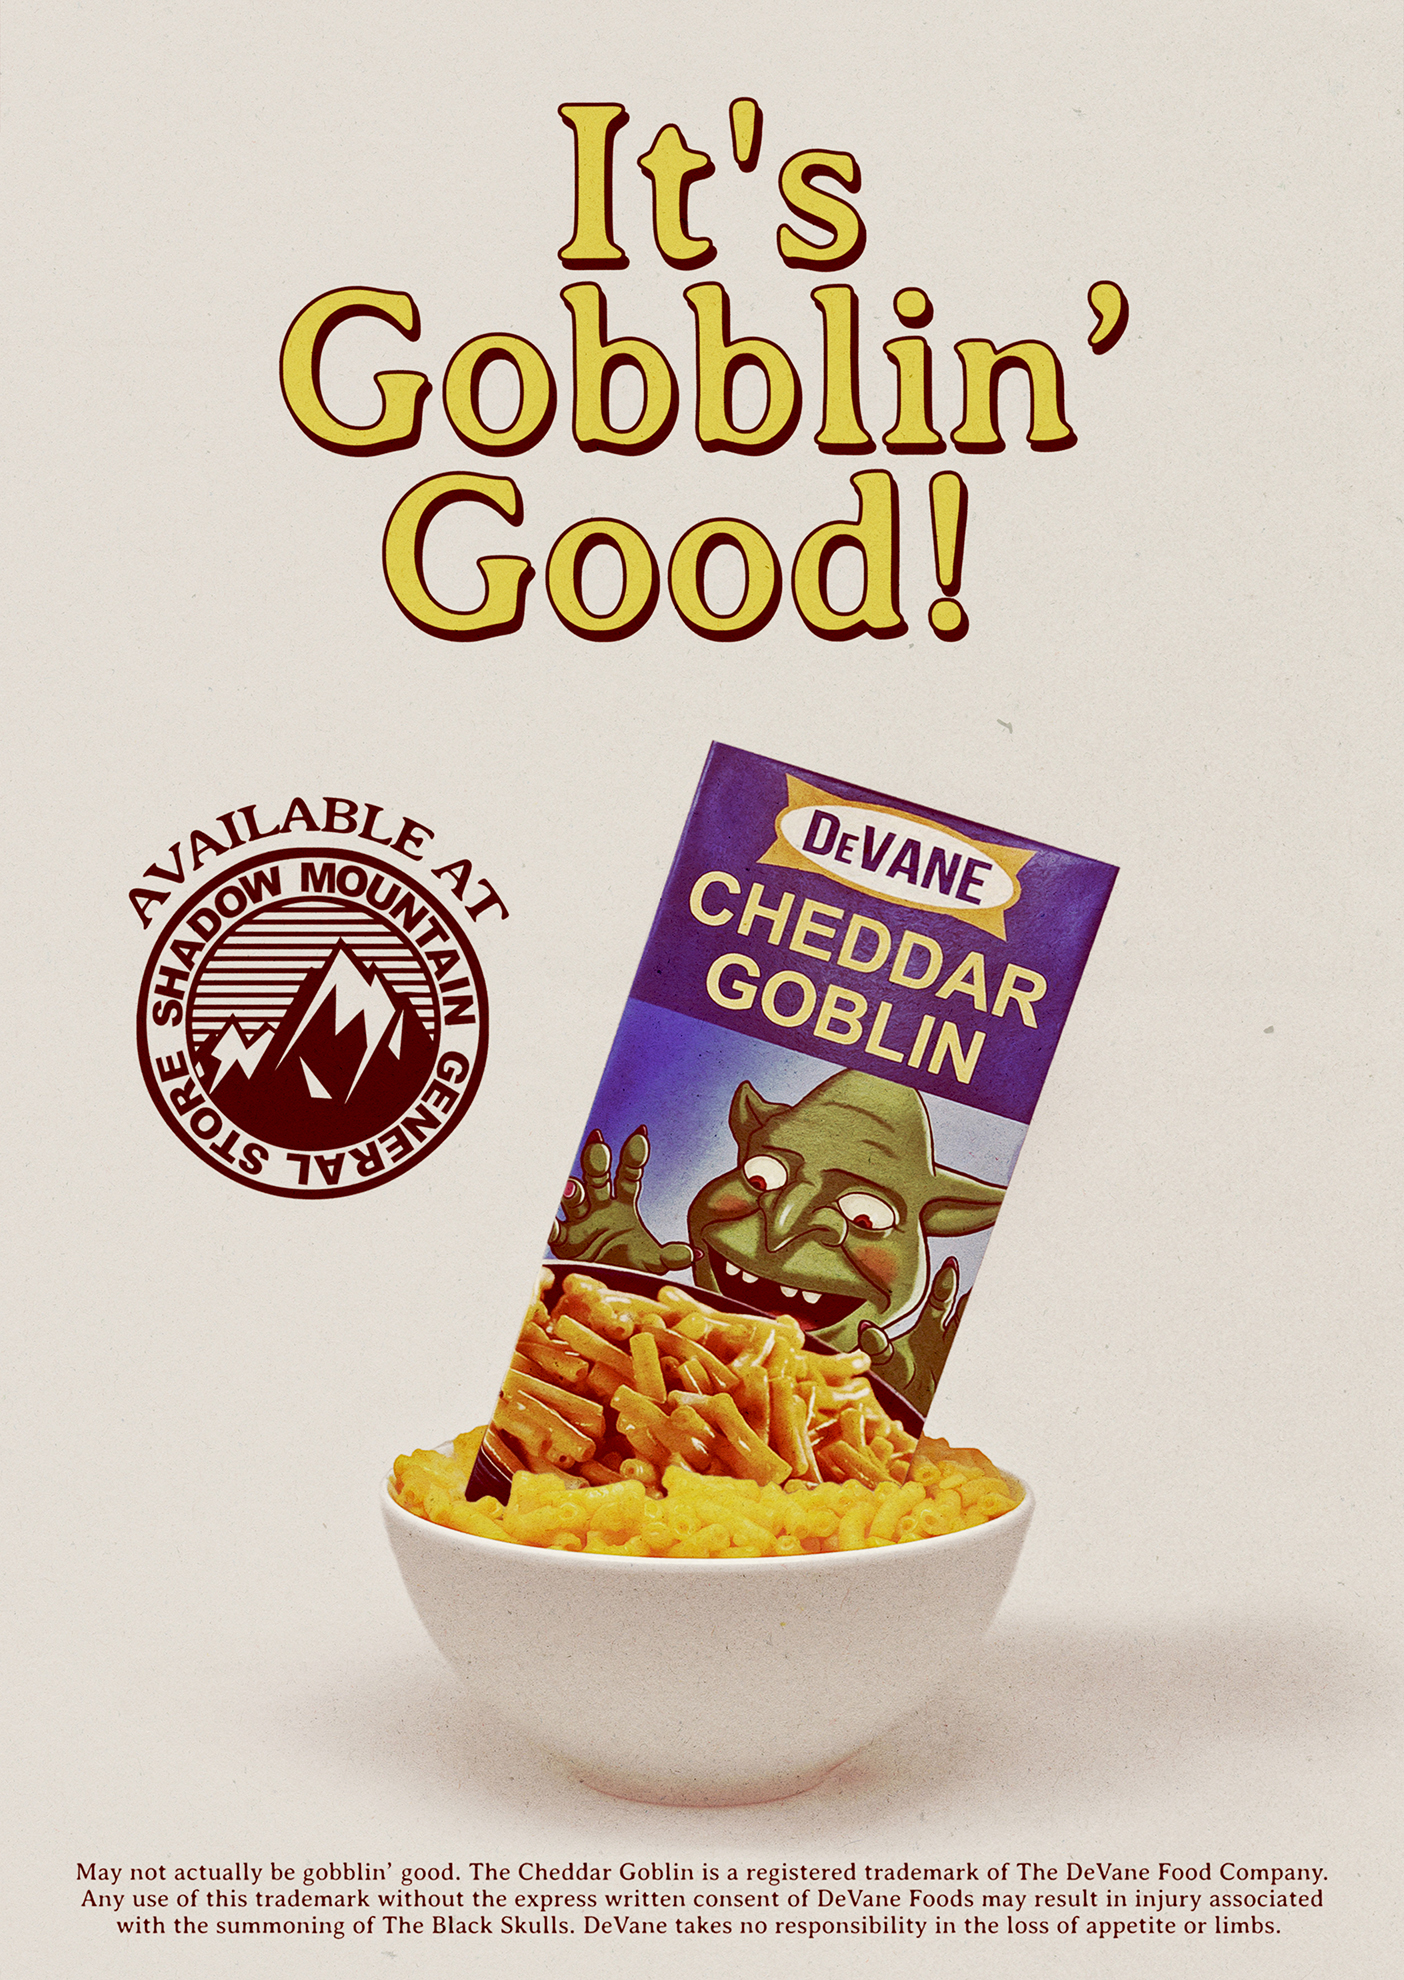 It’s Gobblin’ Good!